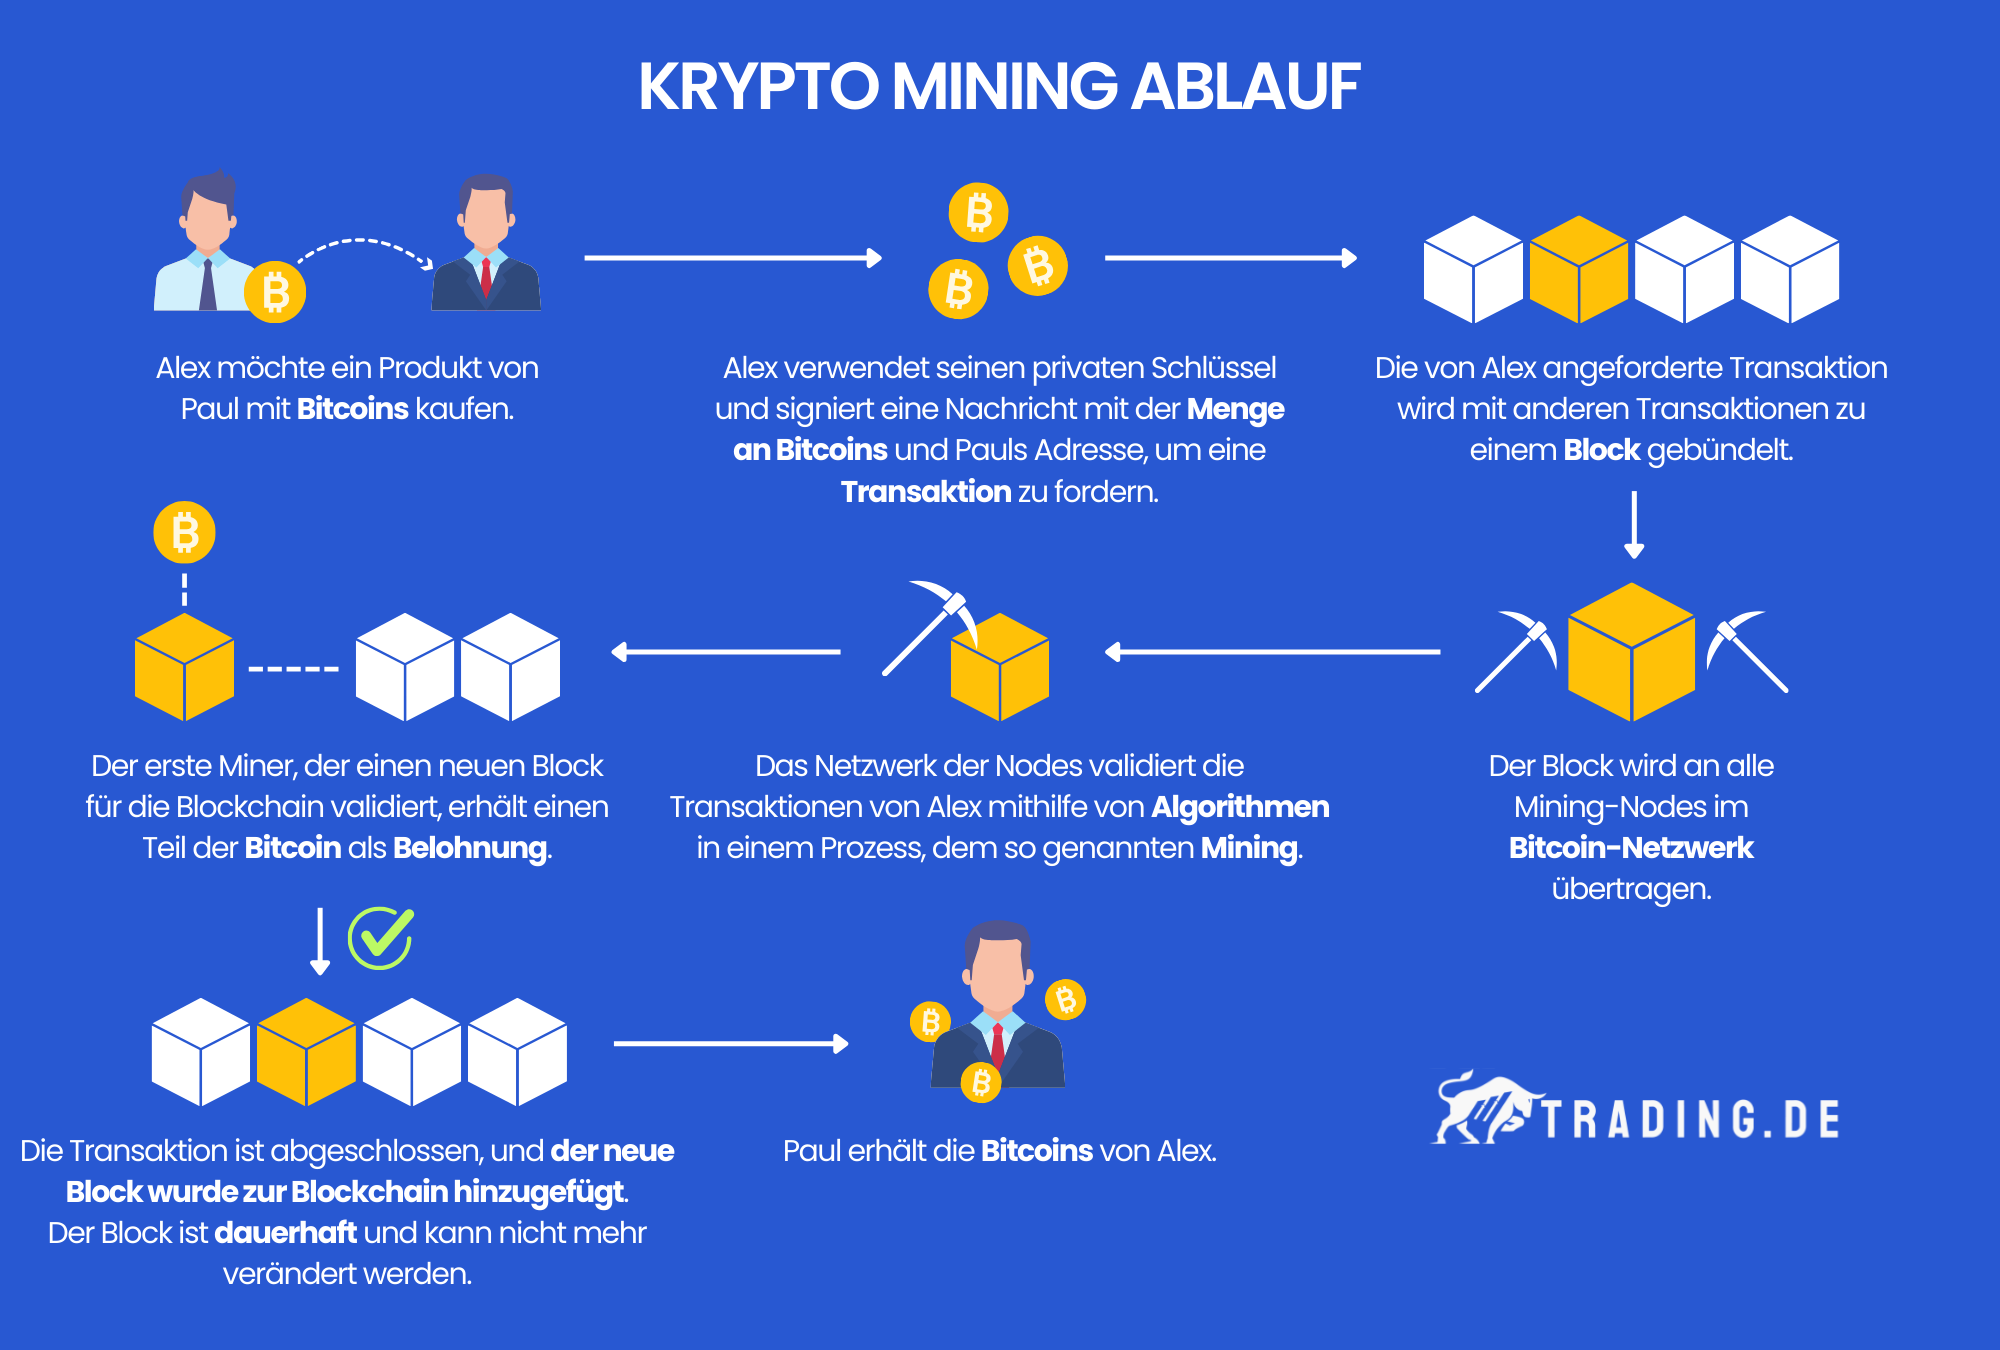 Krypto Mining Ablauf in acht Schritten erklärt. Bitcoin als Beispiel.